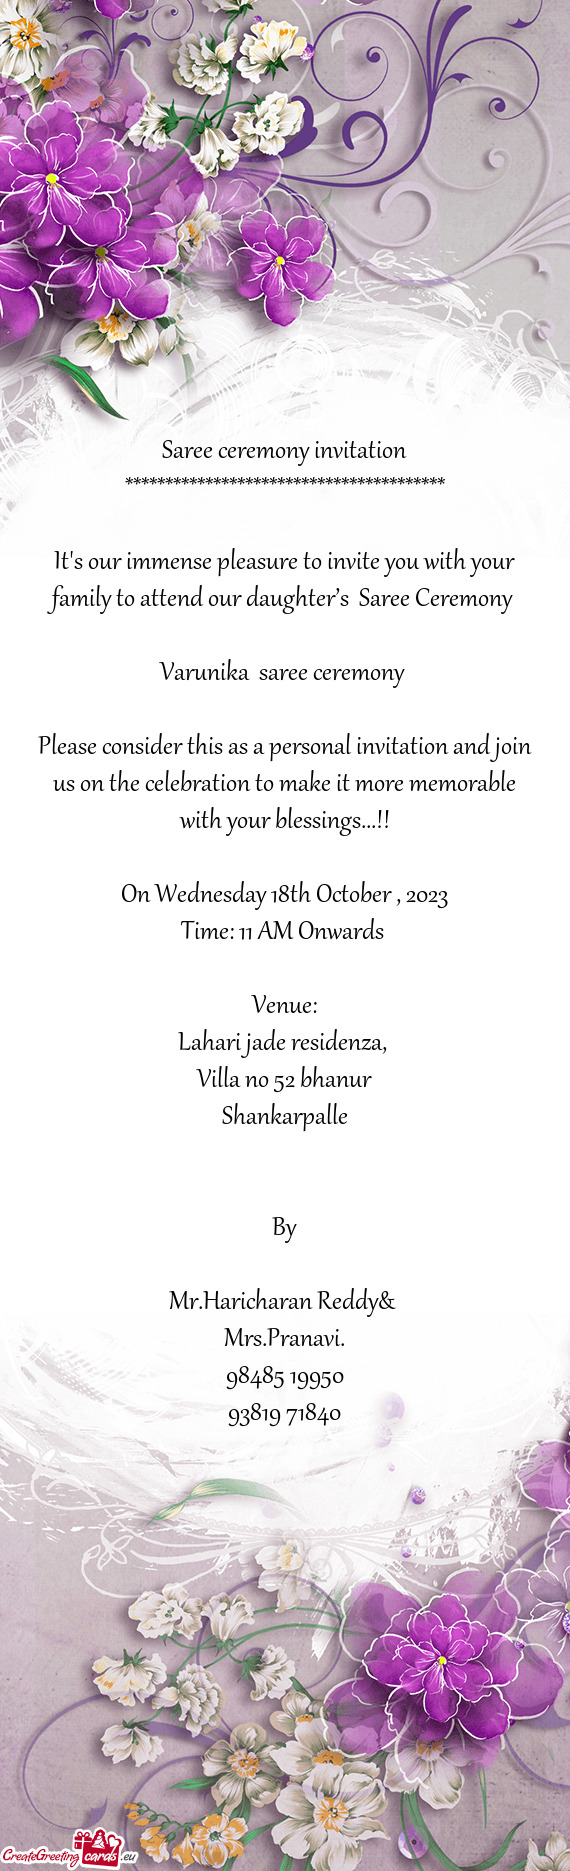 Varunika saree ceremony